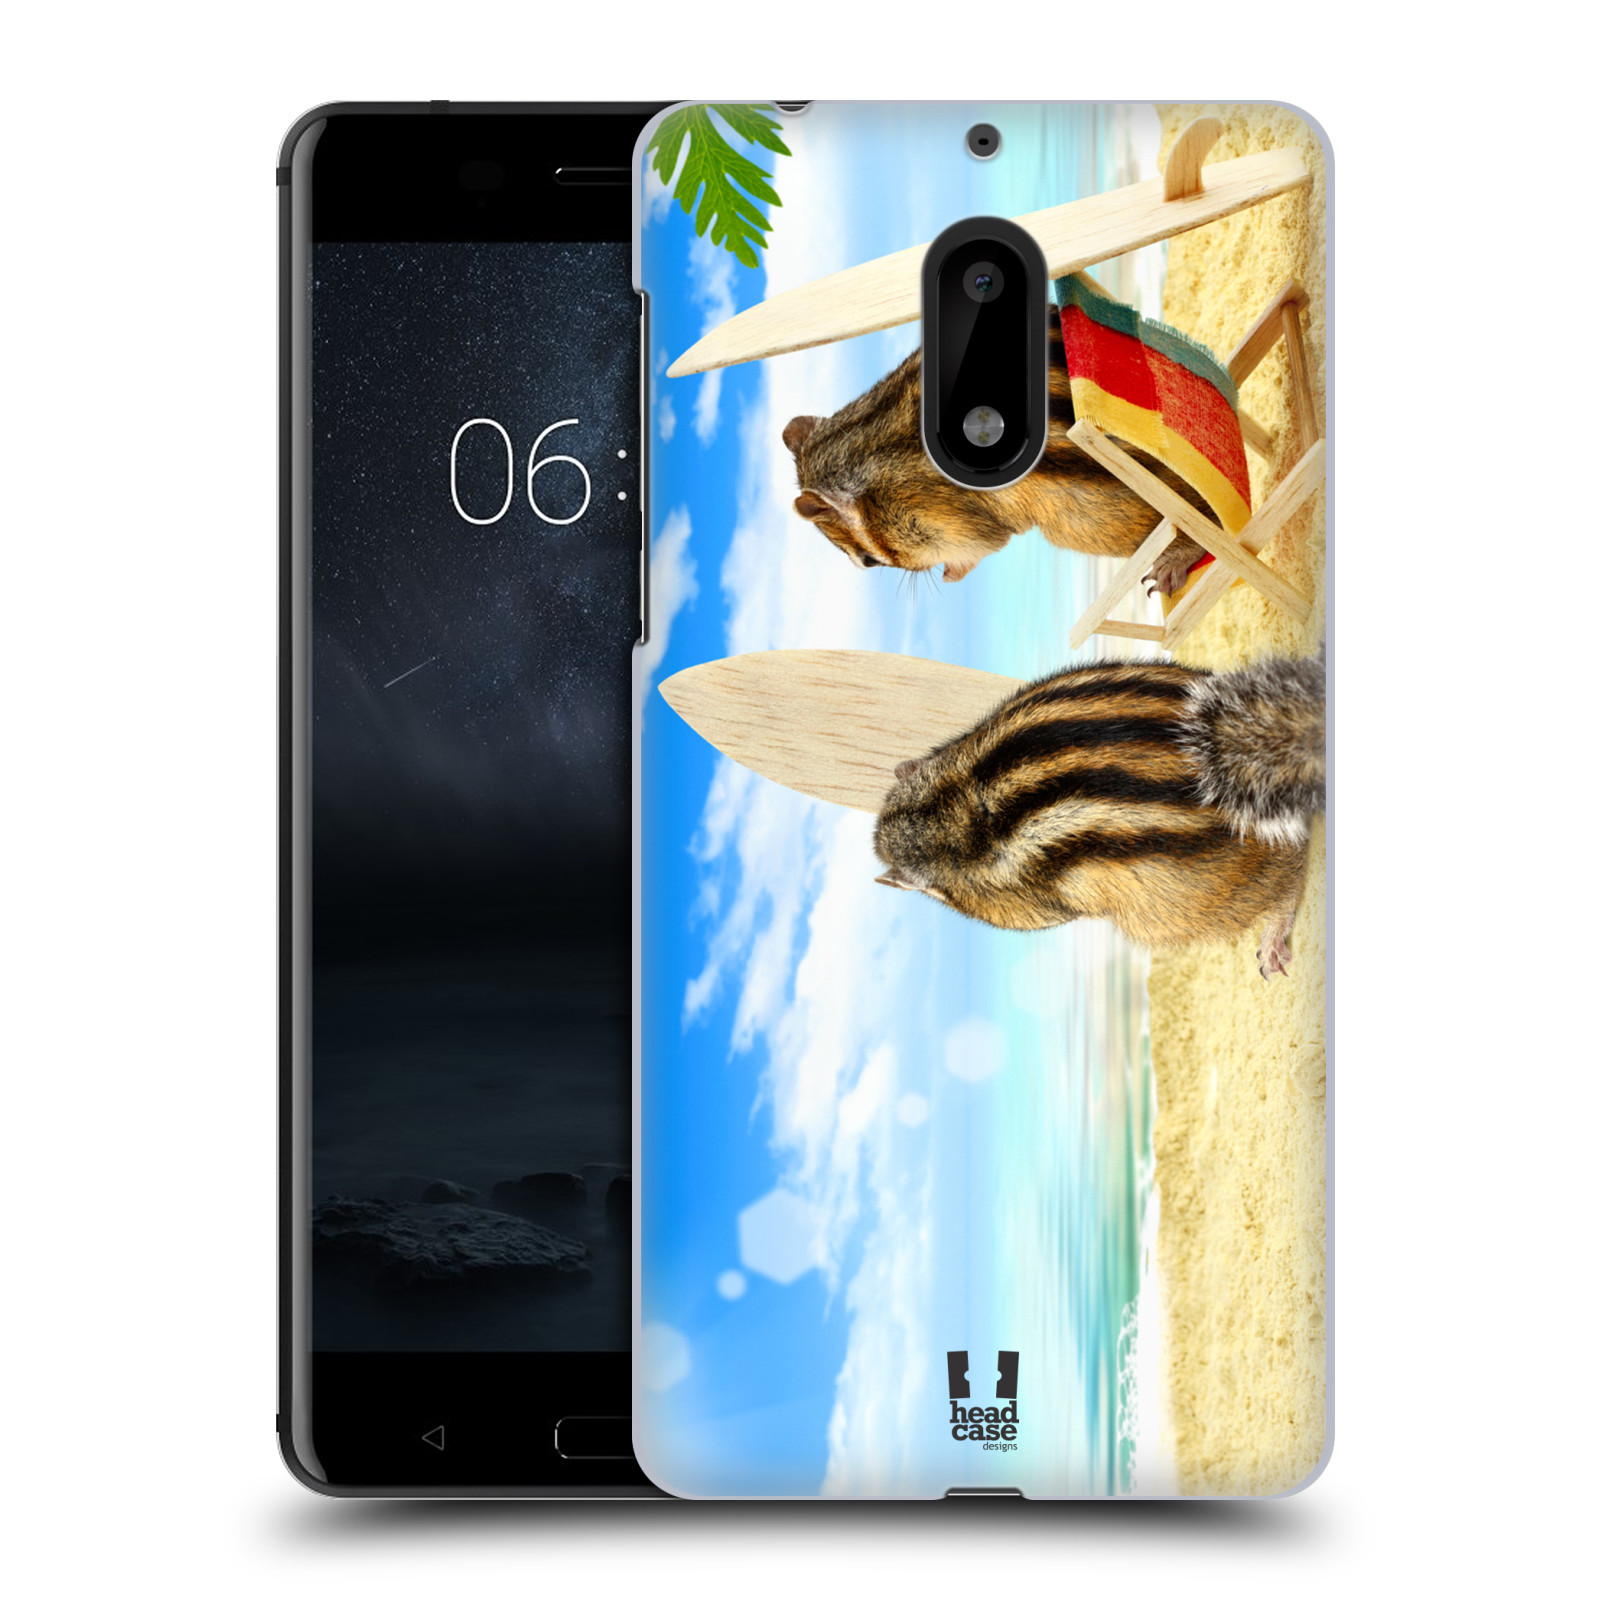 HEAD CASE plastový obal na mobil Nokia 6 vzor Legrační zvířátka veverky surfaři u moře